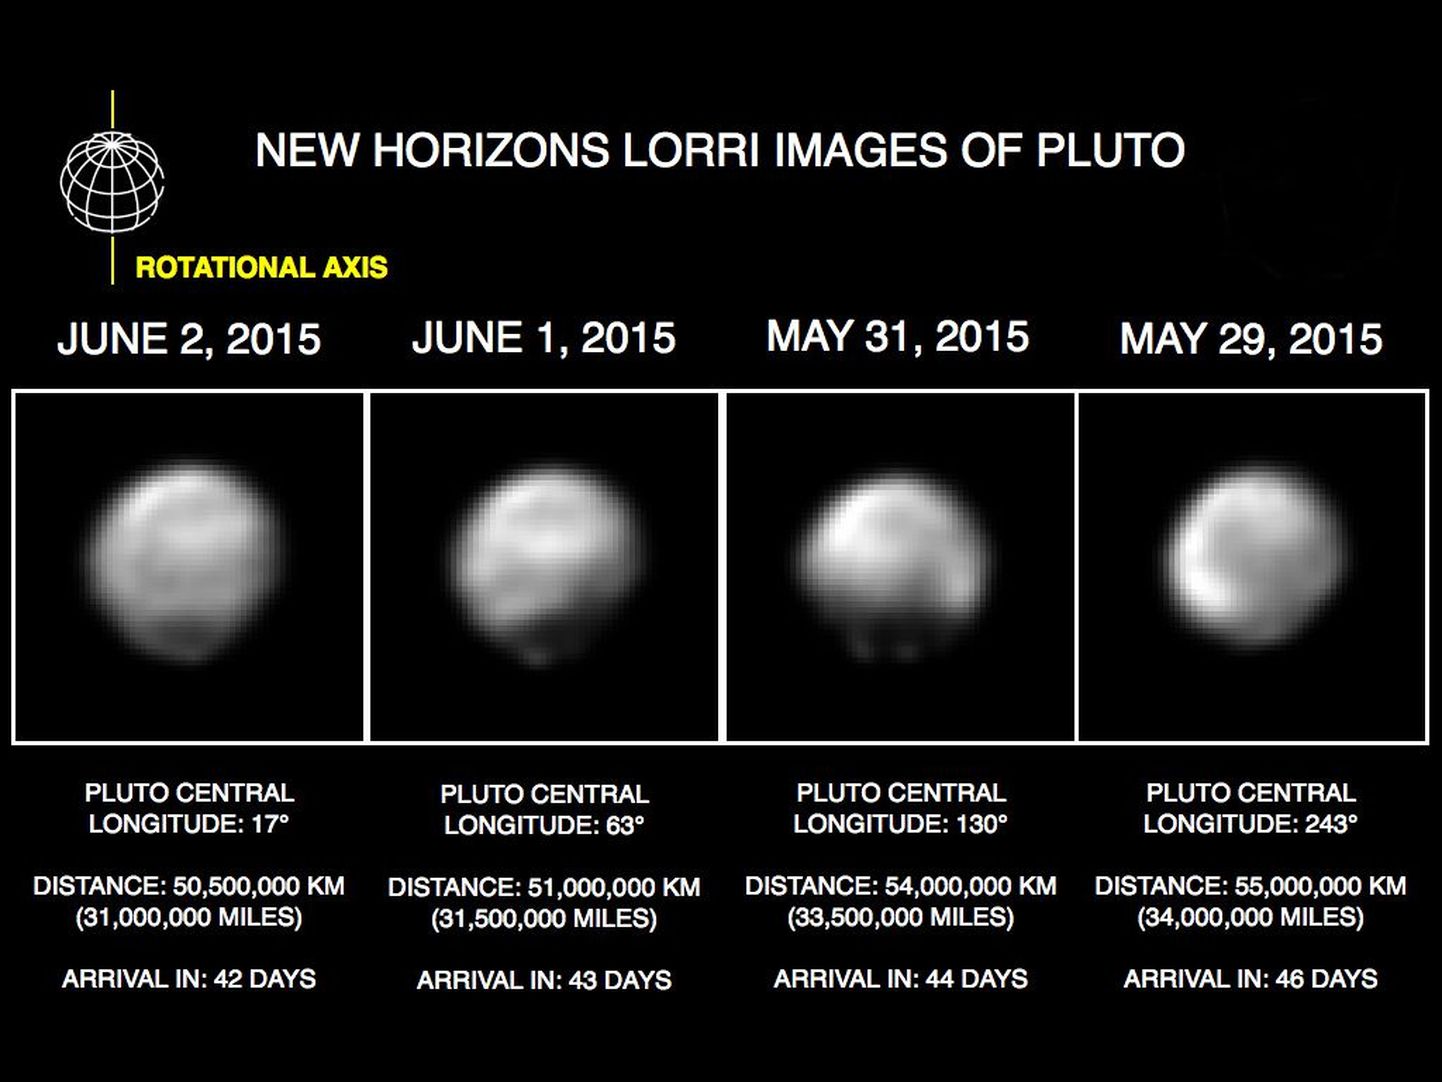 Снимки Плутона, сделанные аппаратом New Horizons.